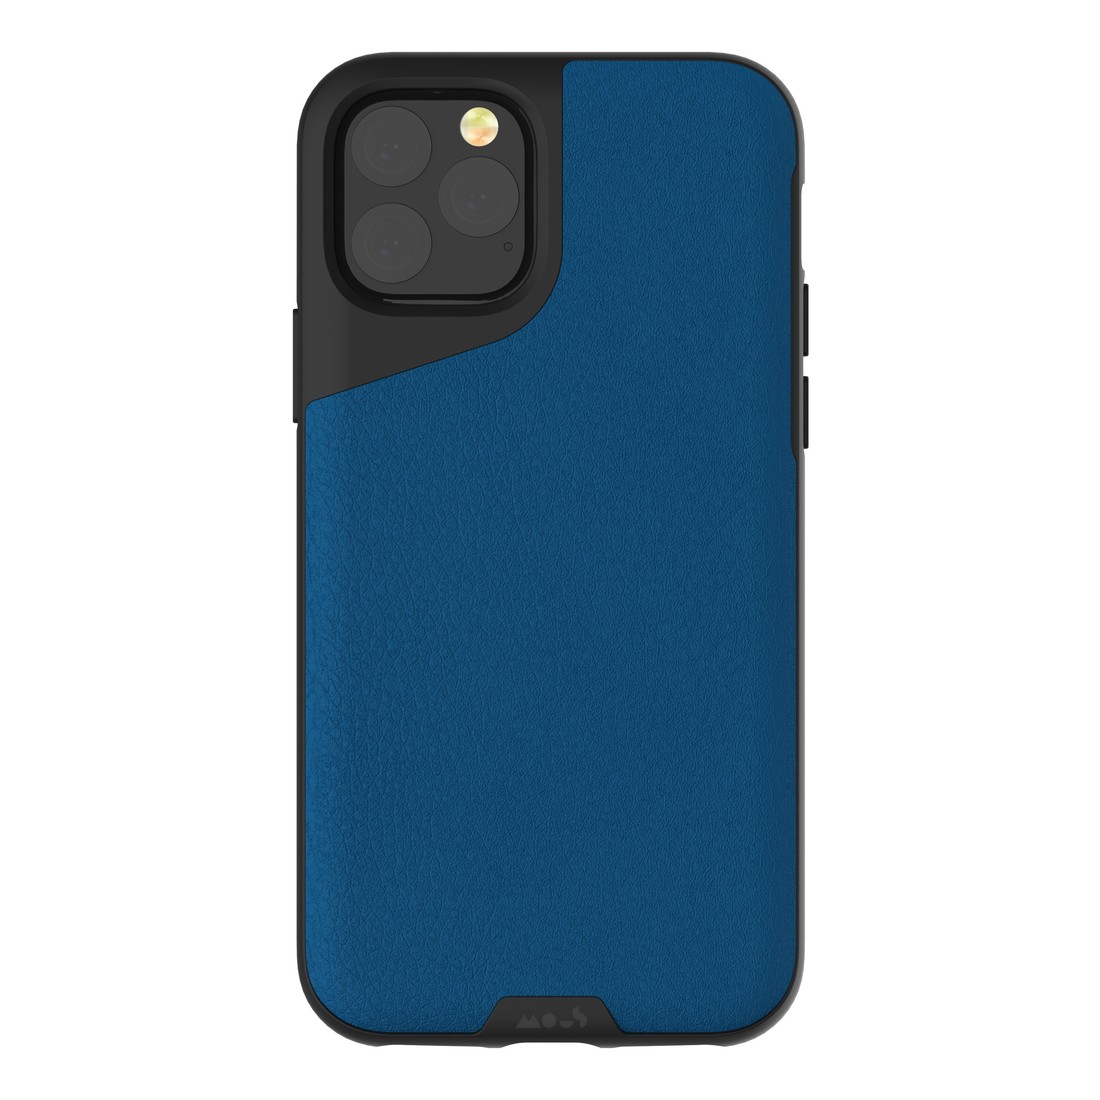 Mous Contour Leather Case Blue for iPhone 11 Pro Max